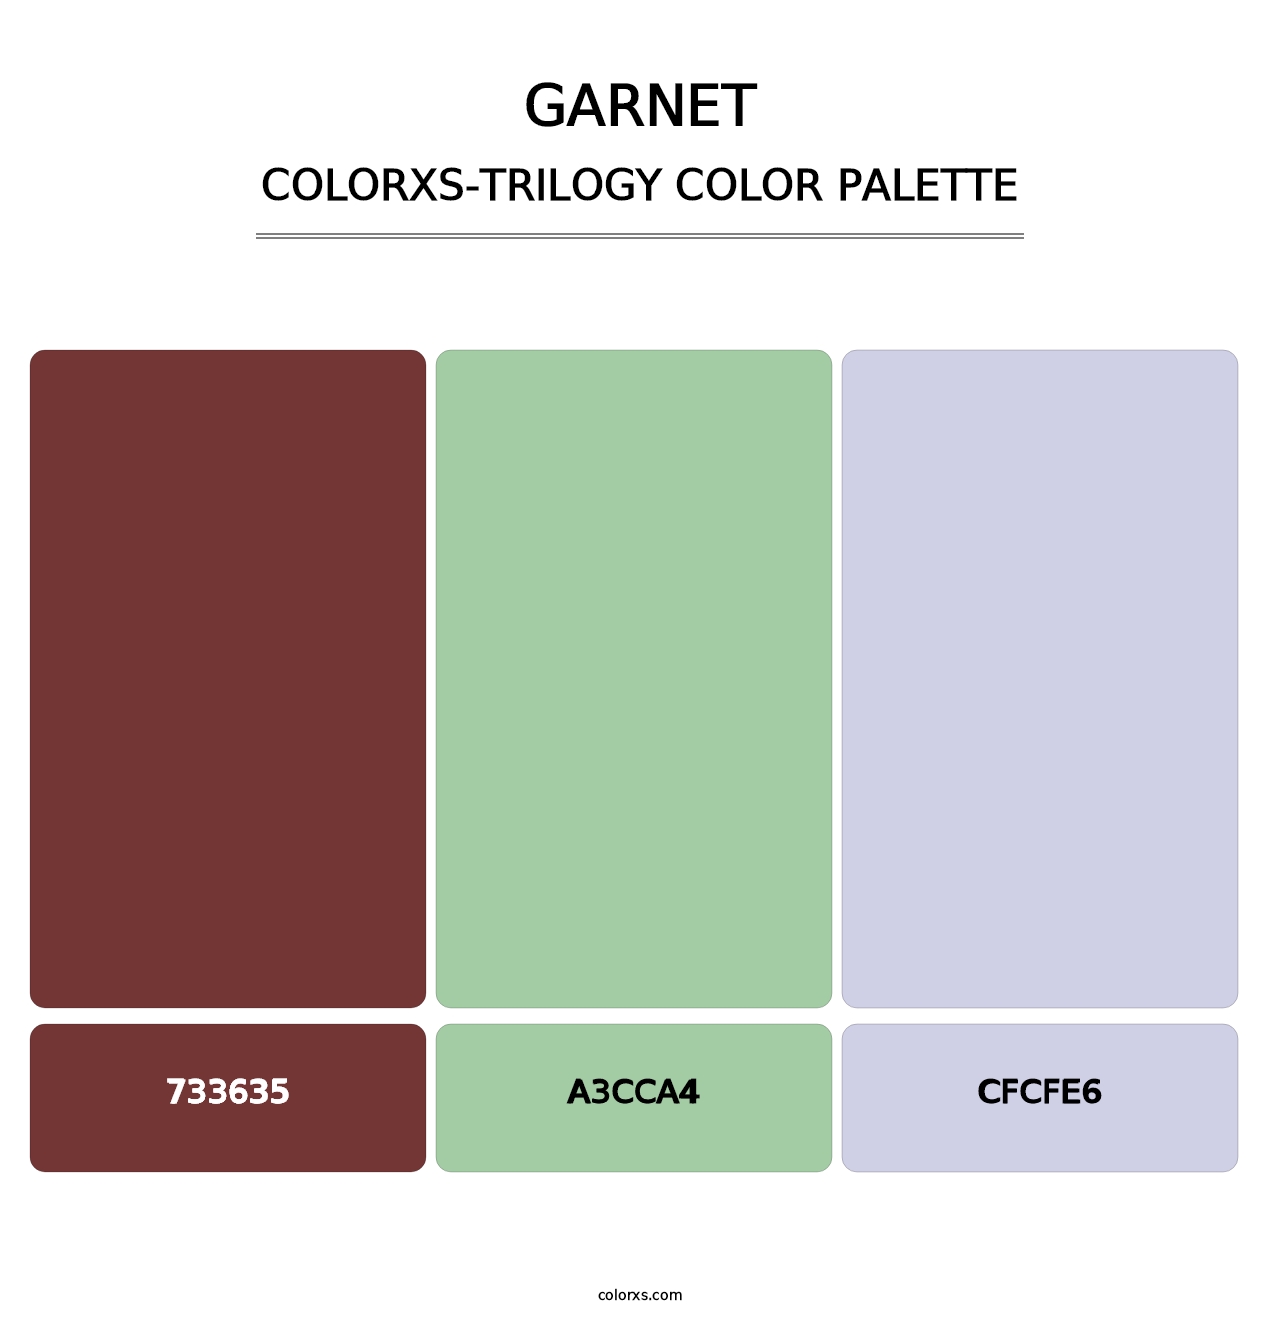 Garnet - Colorxs Trilogy Palette